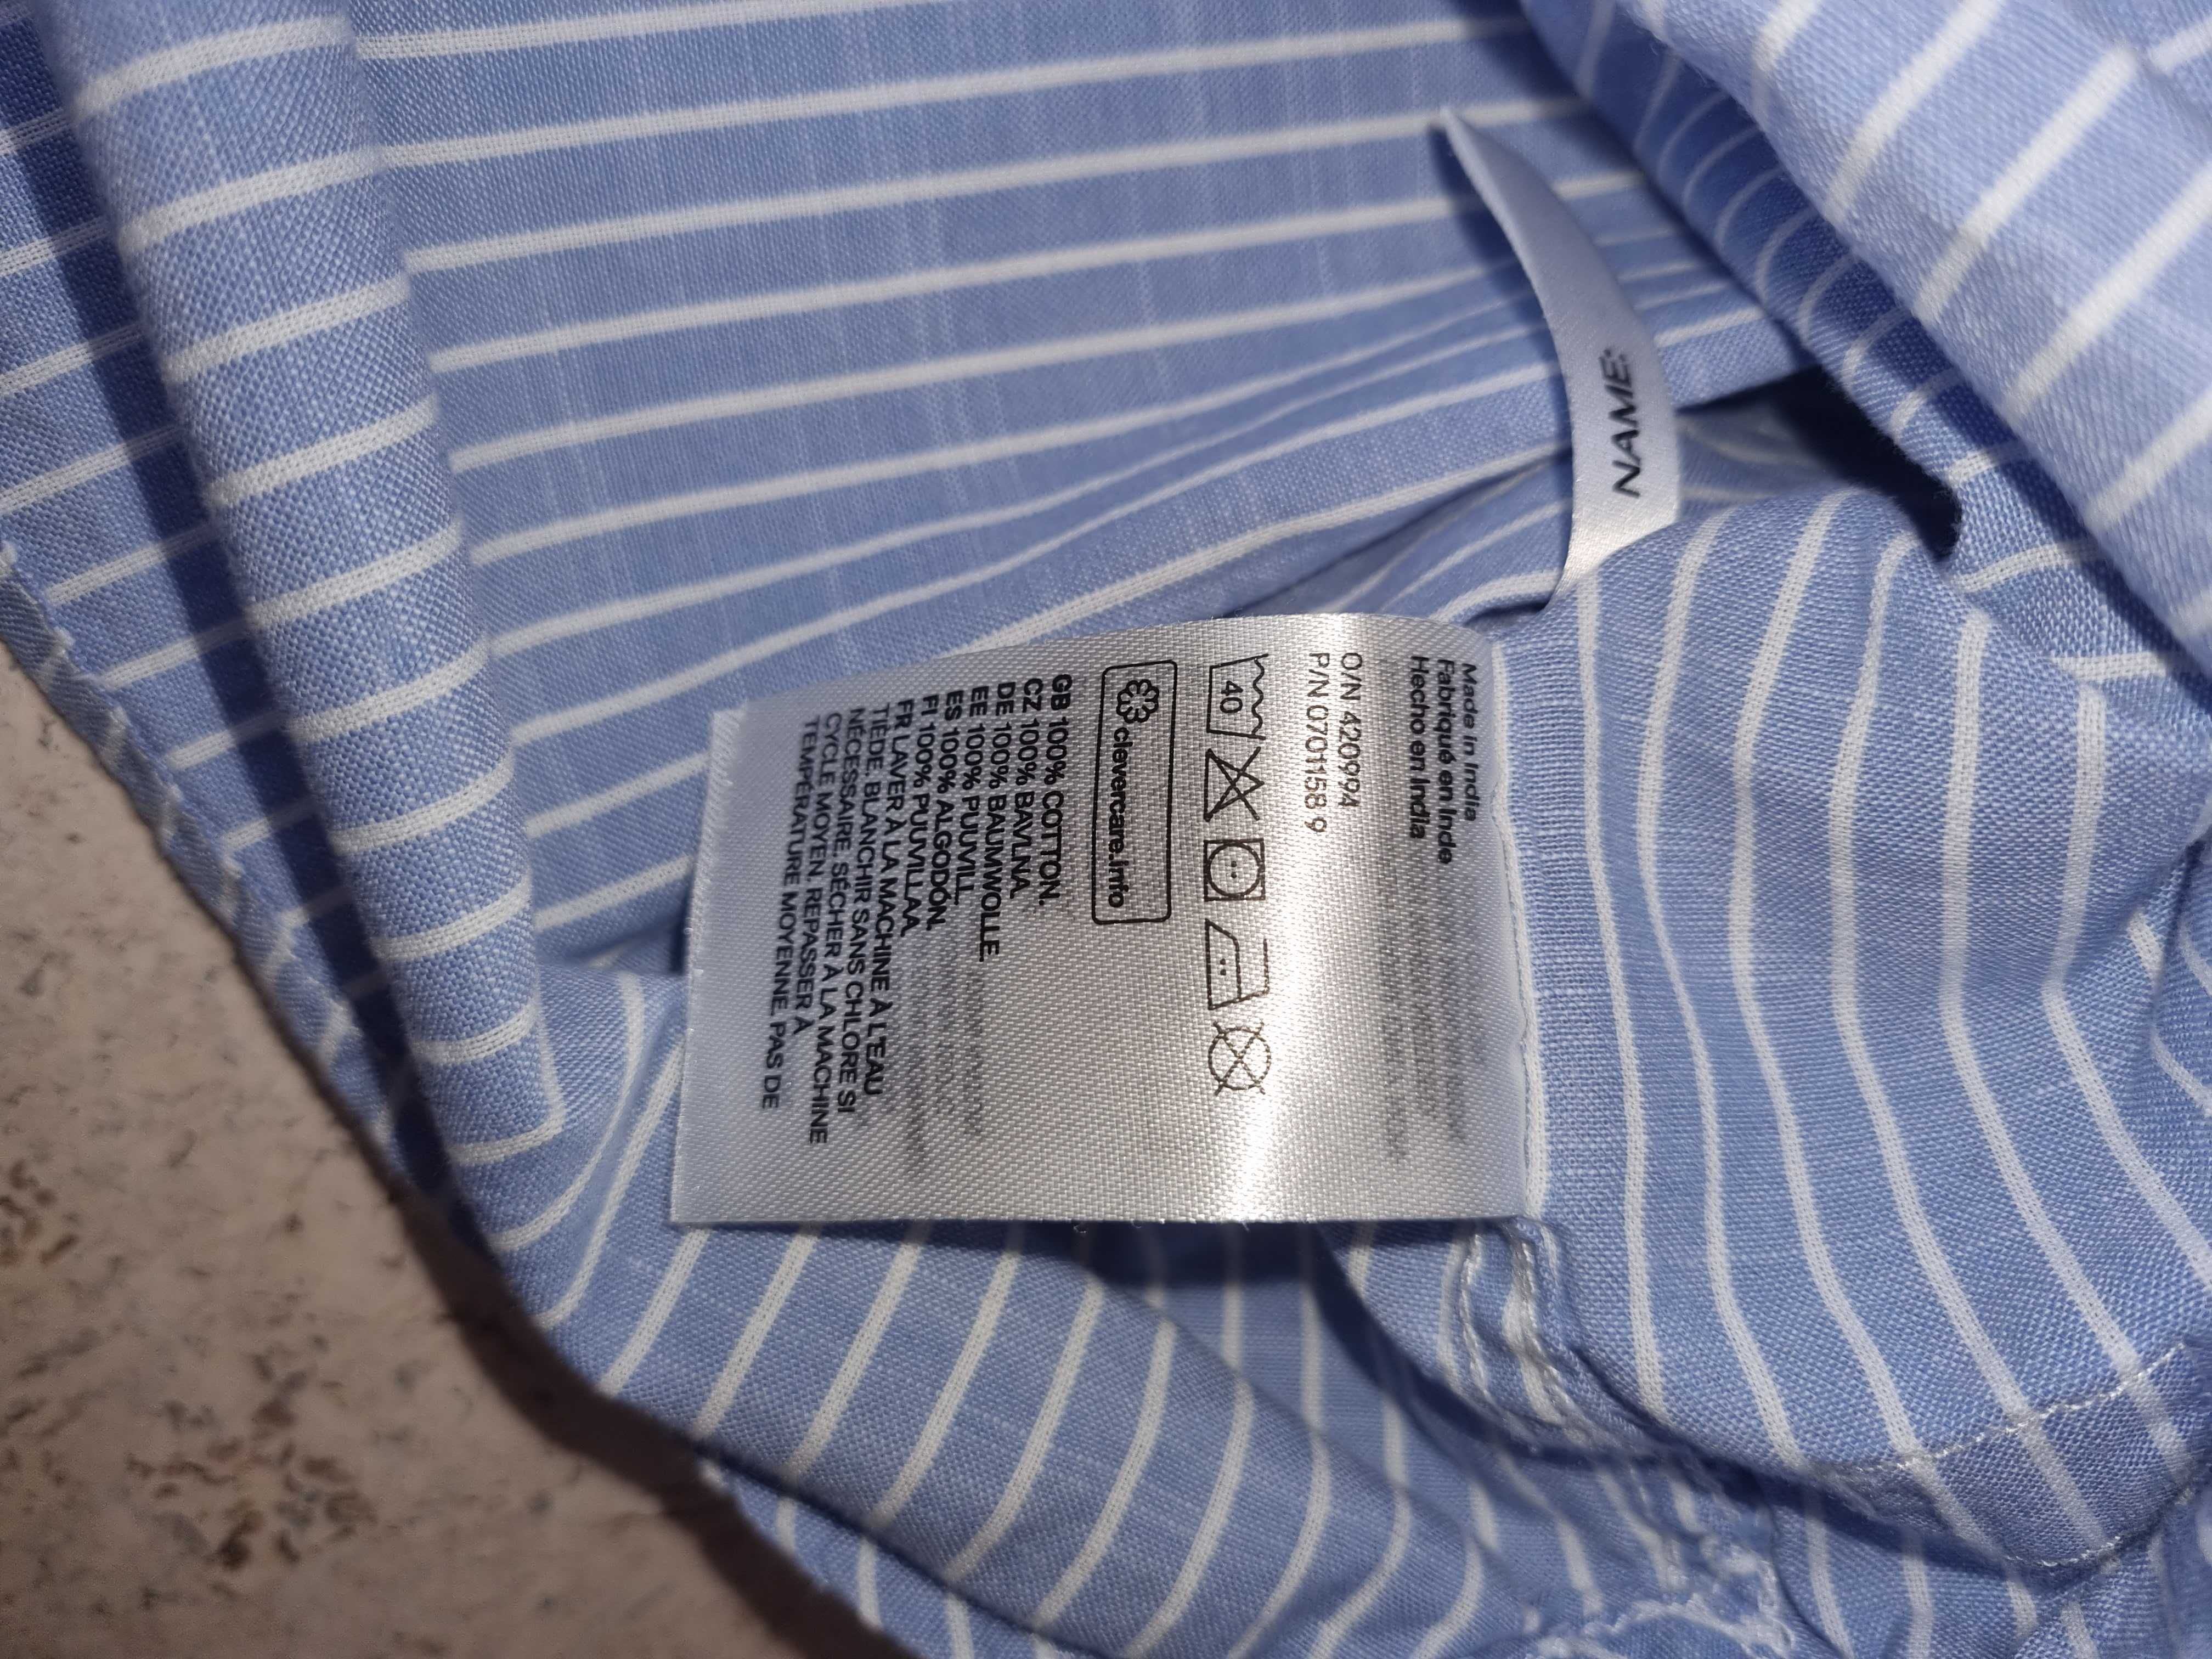 Хлопковая рубашка ф-мы H&M р.122, 128